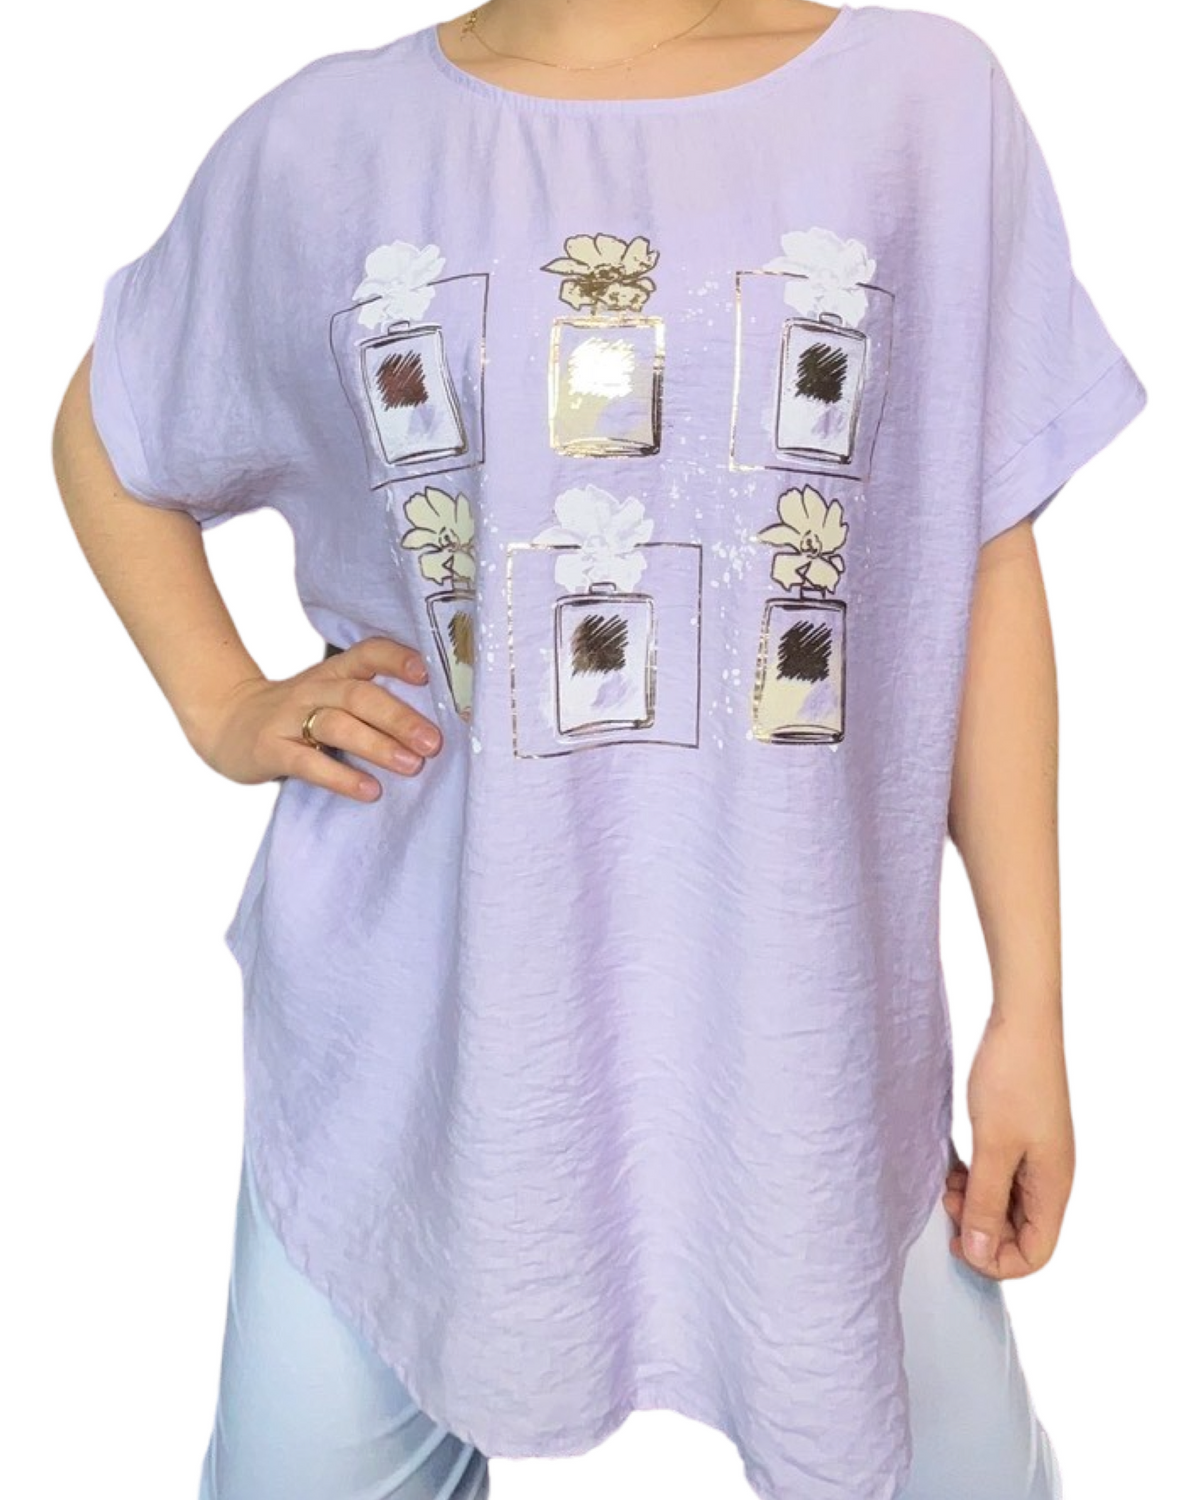 T-shirt lilas pour femme avec imprimé des cadres et des fleurs porté over size.